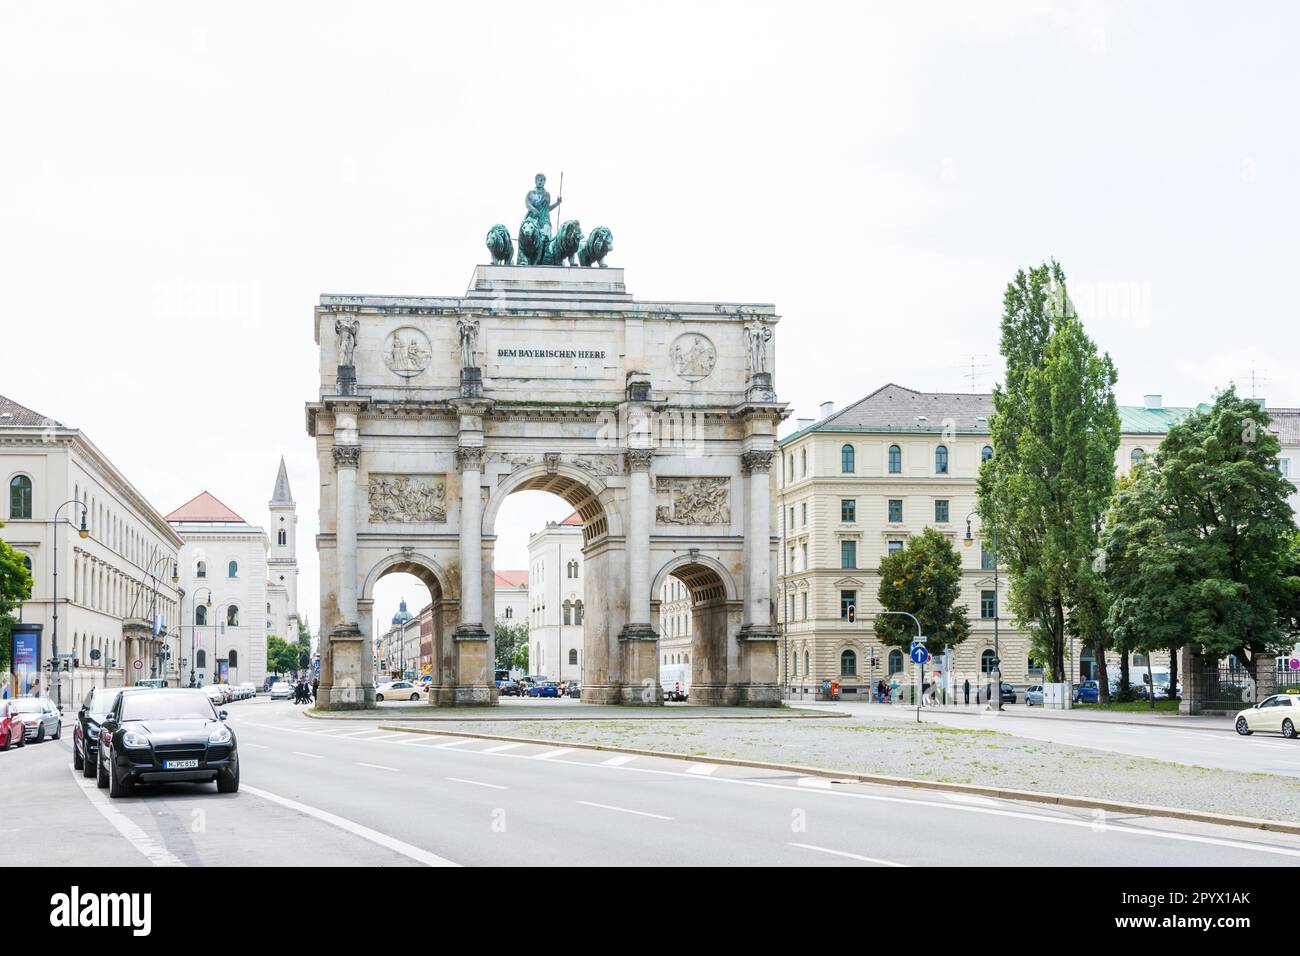 MONACO di BAVIERA, GERMANIA - 25 AGOSTO: Il Siegestor (porta della Vittoria) a Monaco di Baviera, Germania il 25 agosto 2014. Originariamente dedicato alla gloria dell'esercito è Foto Stock